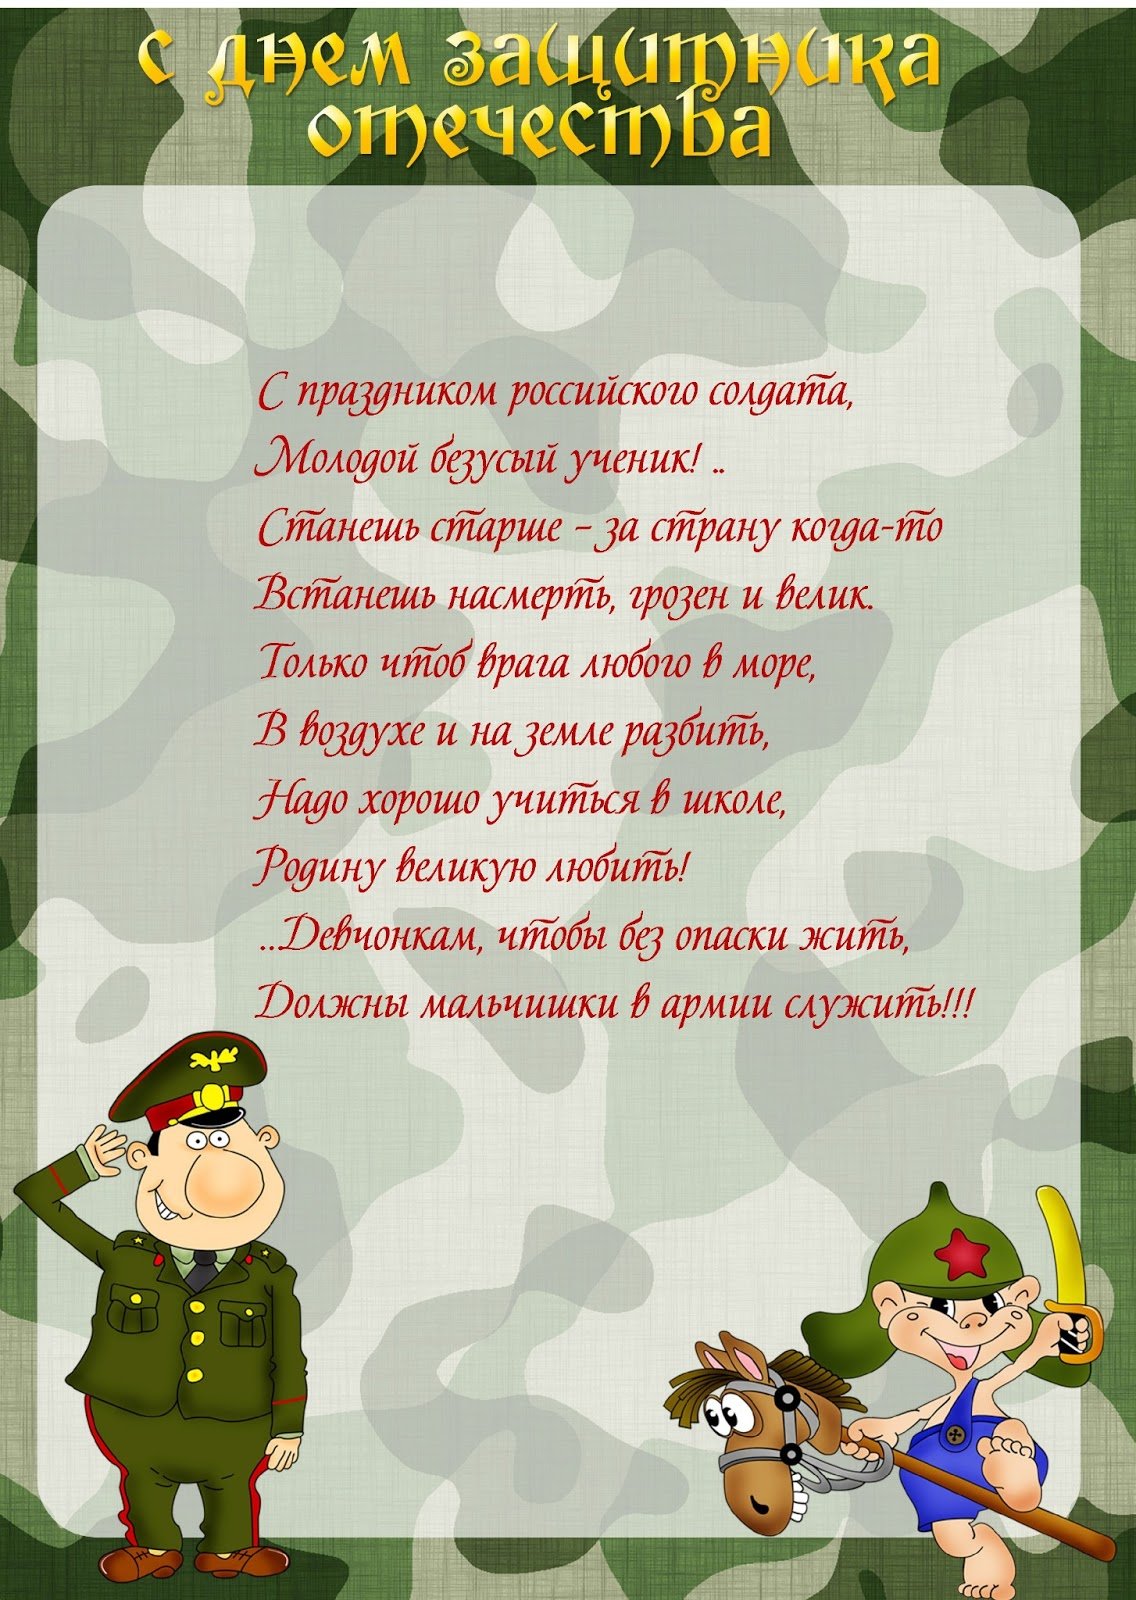 Поздравление с днем защитника отечества в школе. Стихи на 23 февраля. Стихи на 23 февраля для детей. Детские стихи к 23 февраля. Поздравление солдату.